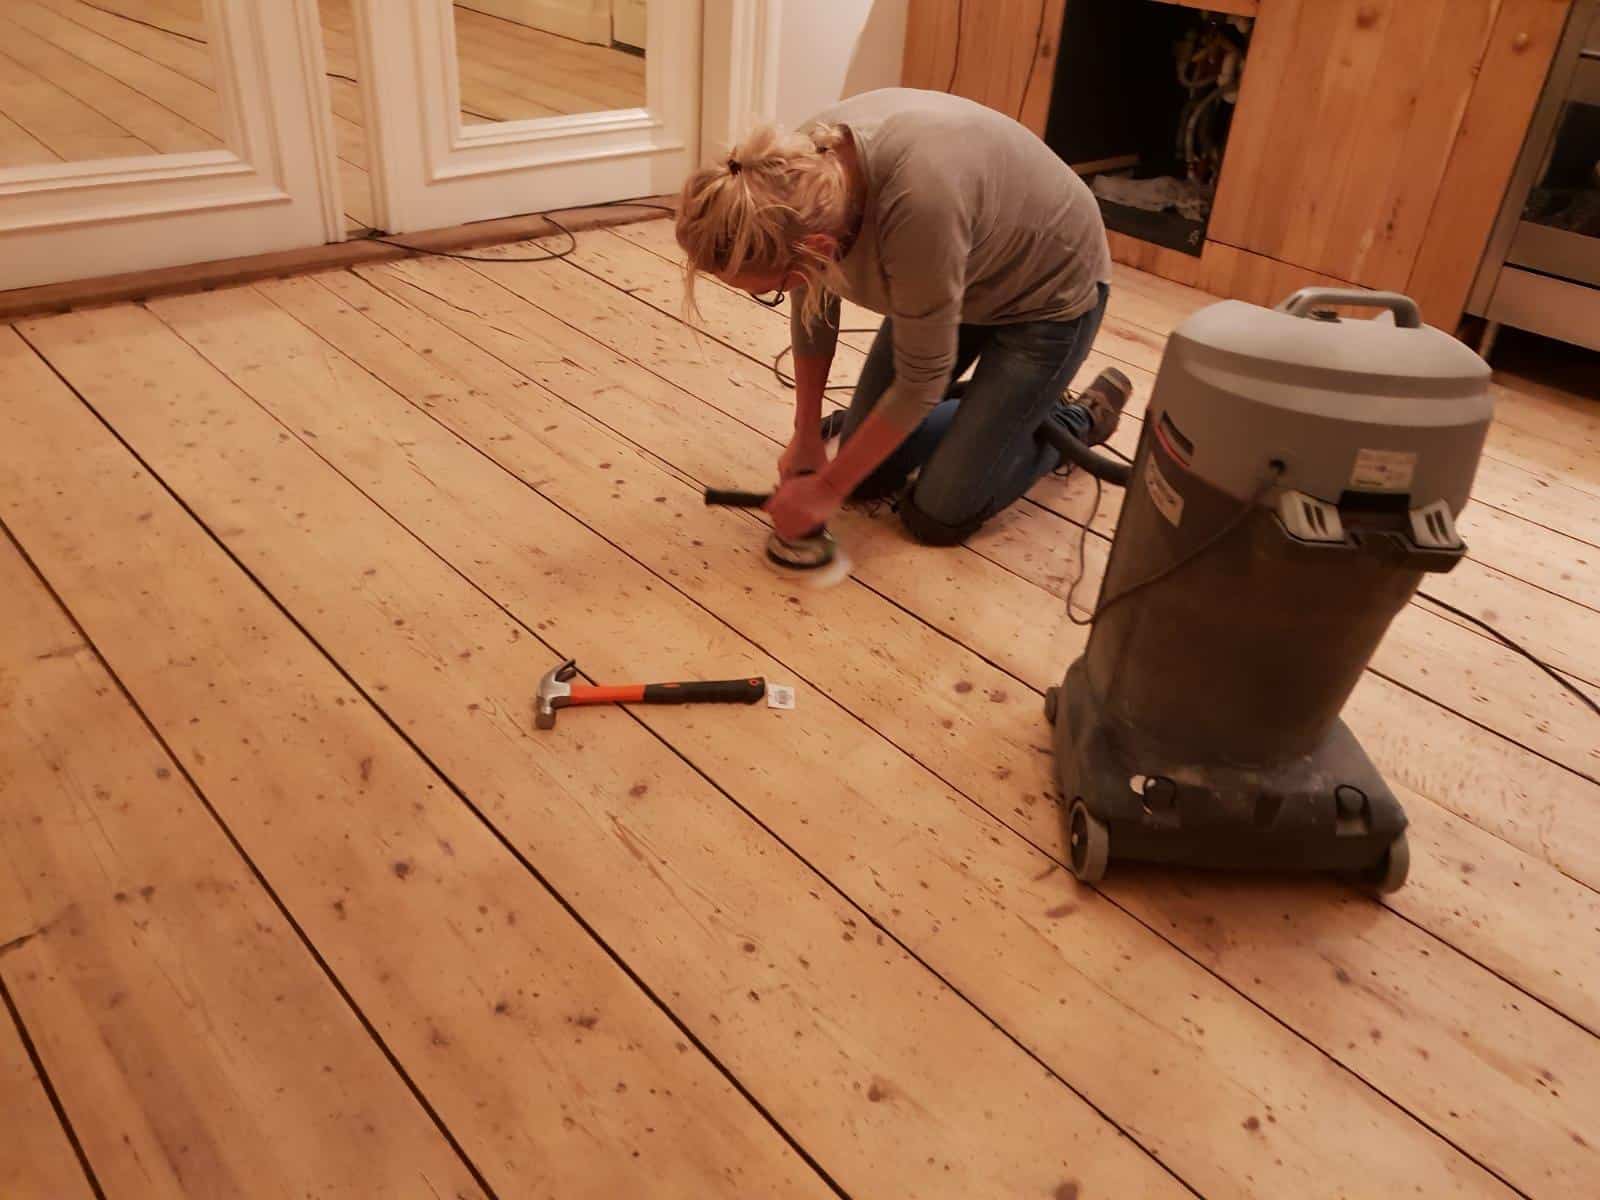 Zonsverduistering Rijk Penelope Houten vloer schuren - Woodstock vloeren houten vloer schuren